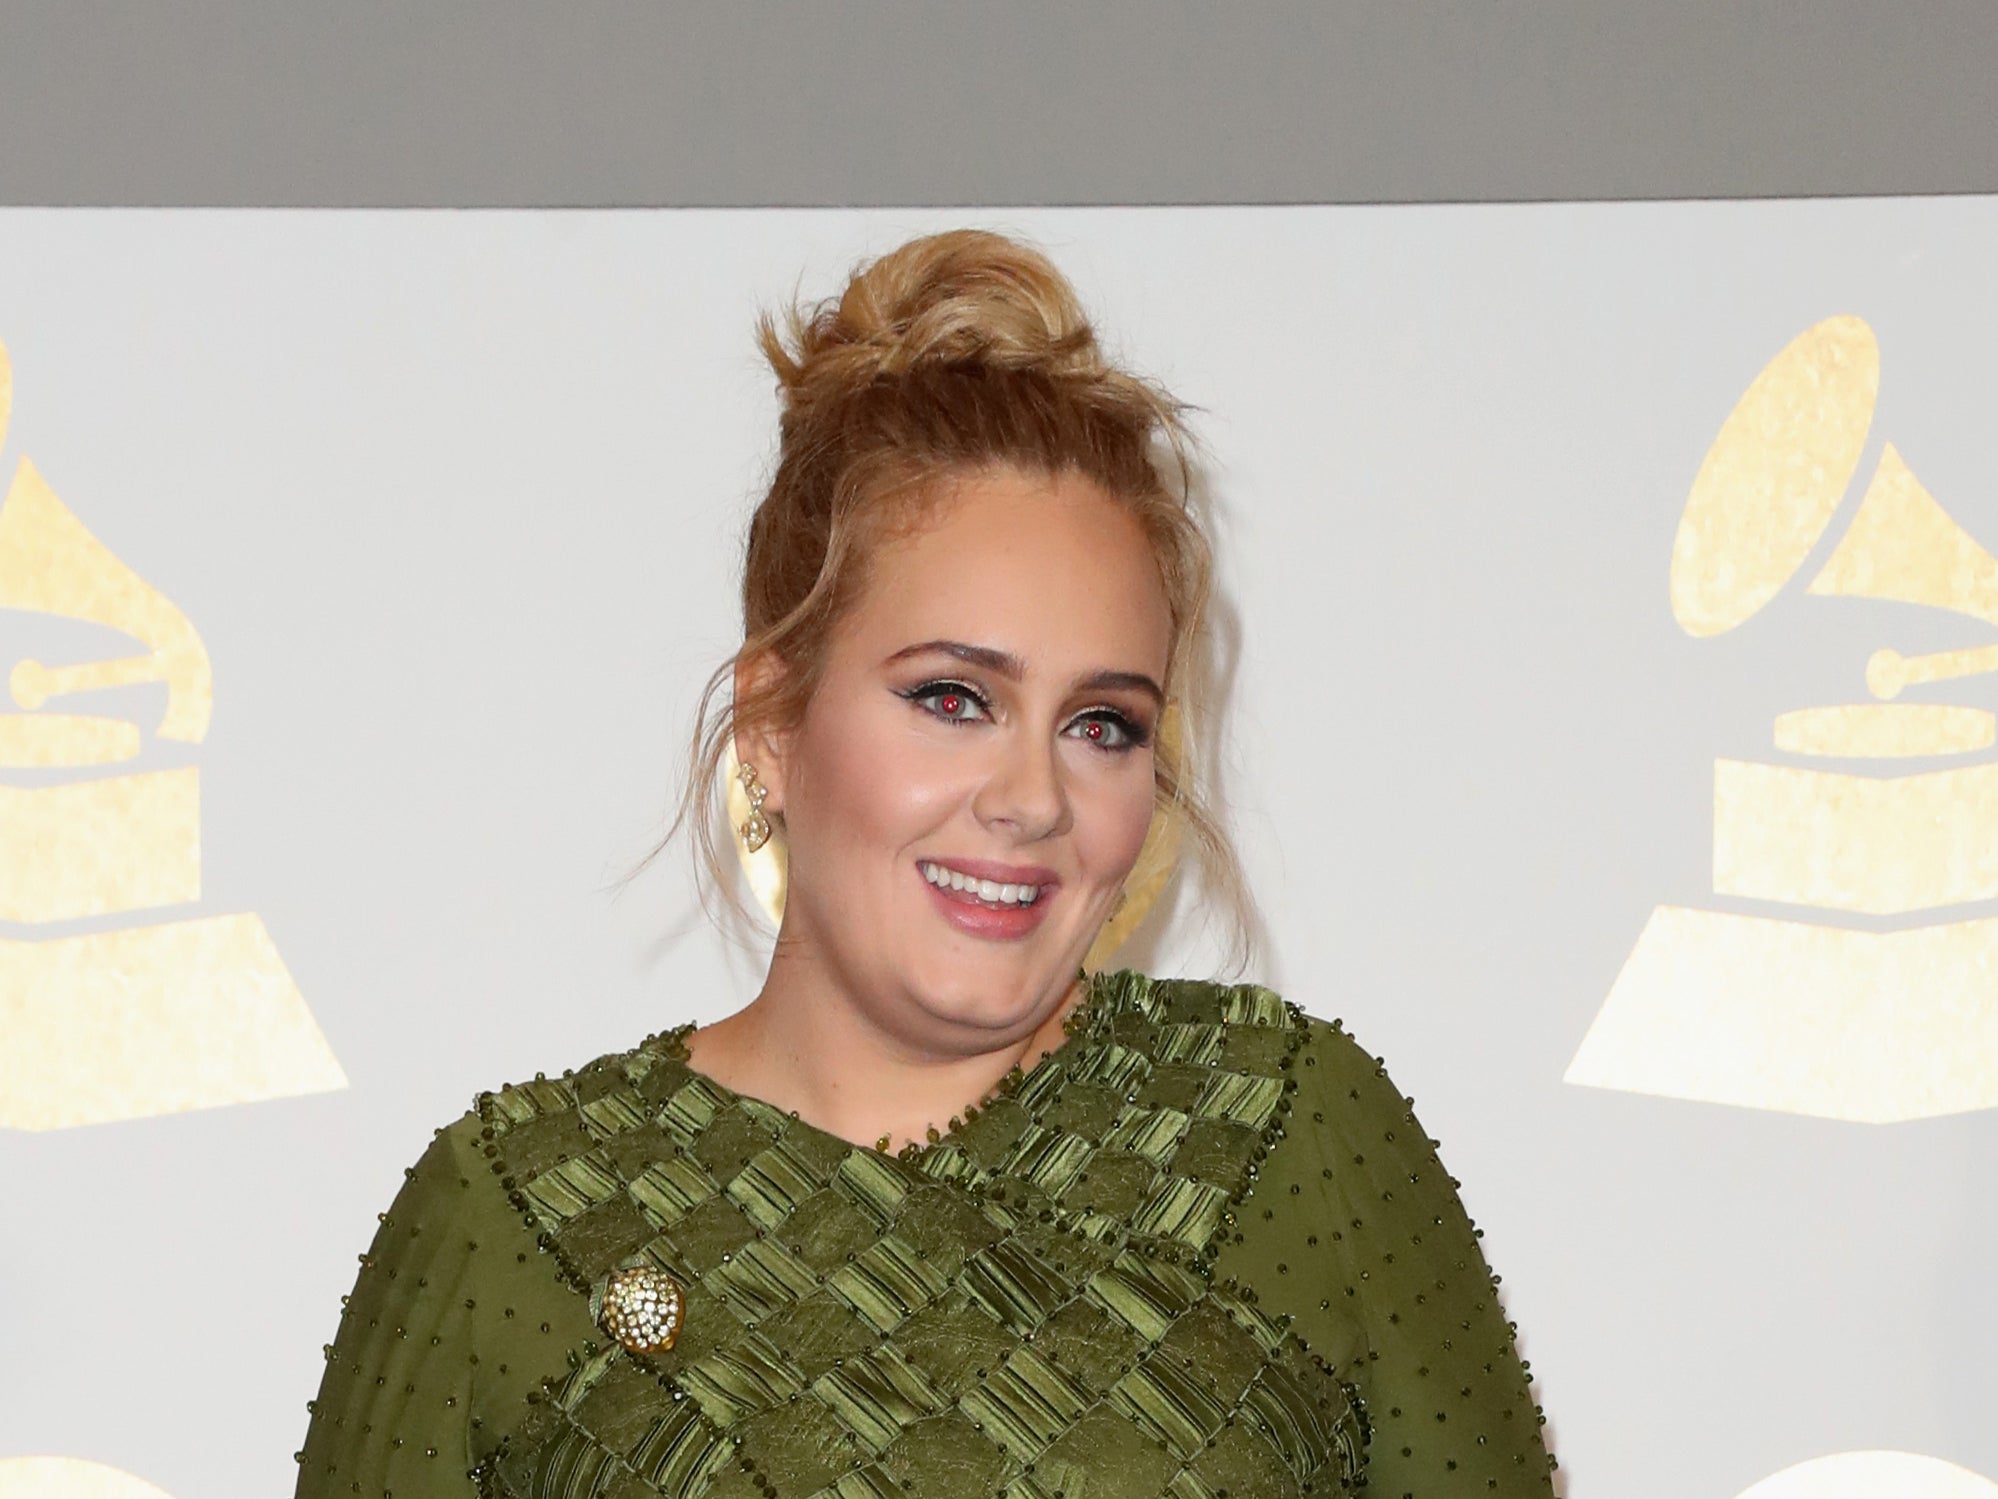 El periodista refutó las afirmaciones de que la “profunda” y “divertida” Adele abandonó la entrevista